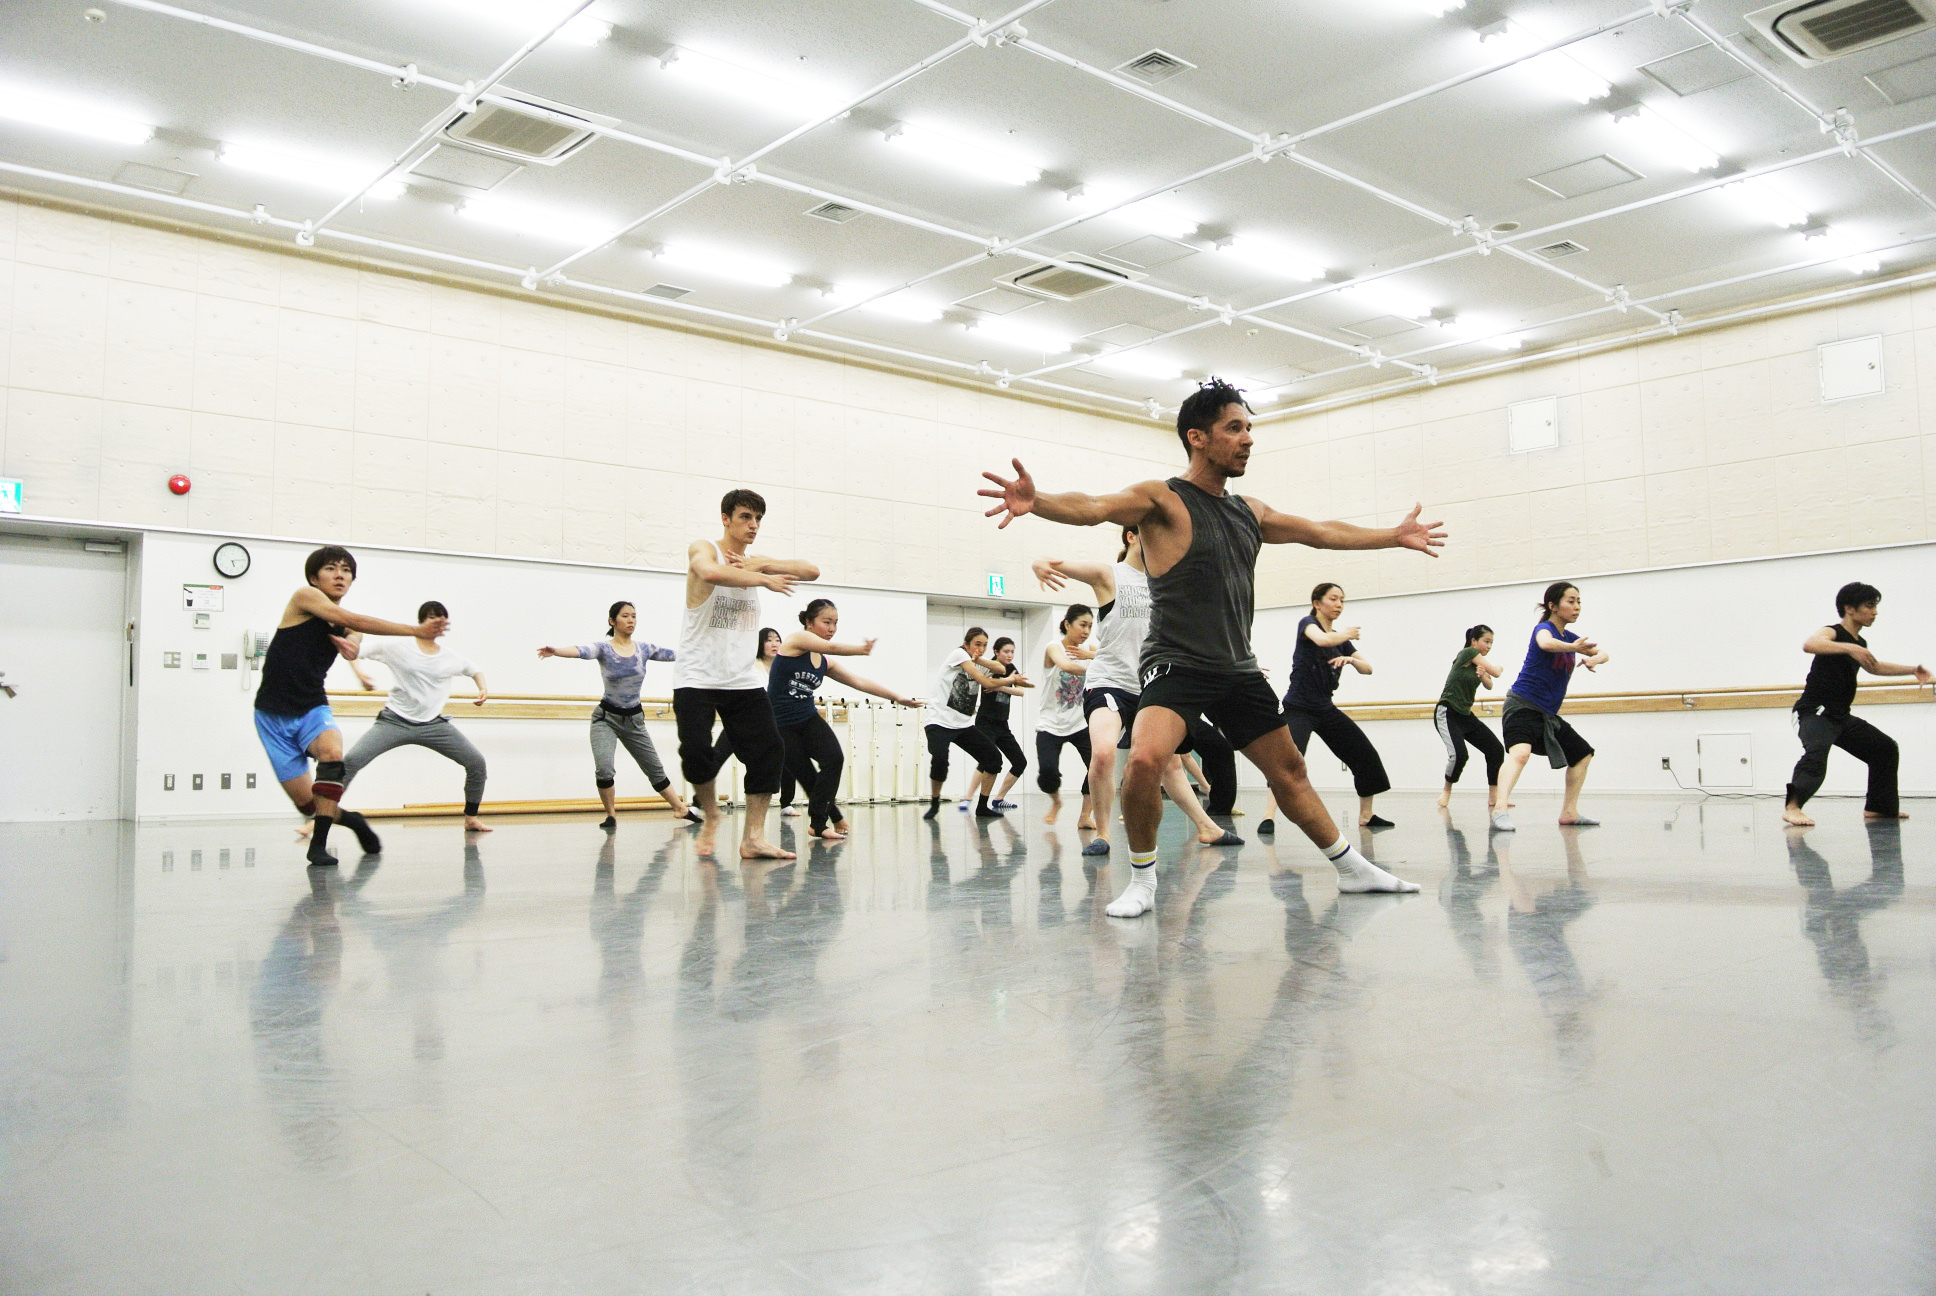 マシュー ボーンを生んだ英国伝統のモダン ダンス学校 トリニティ ラバン が日本で初めてのオープンクラスを開催 一般社団法人 日英ダンス 協会のプレスリリース